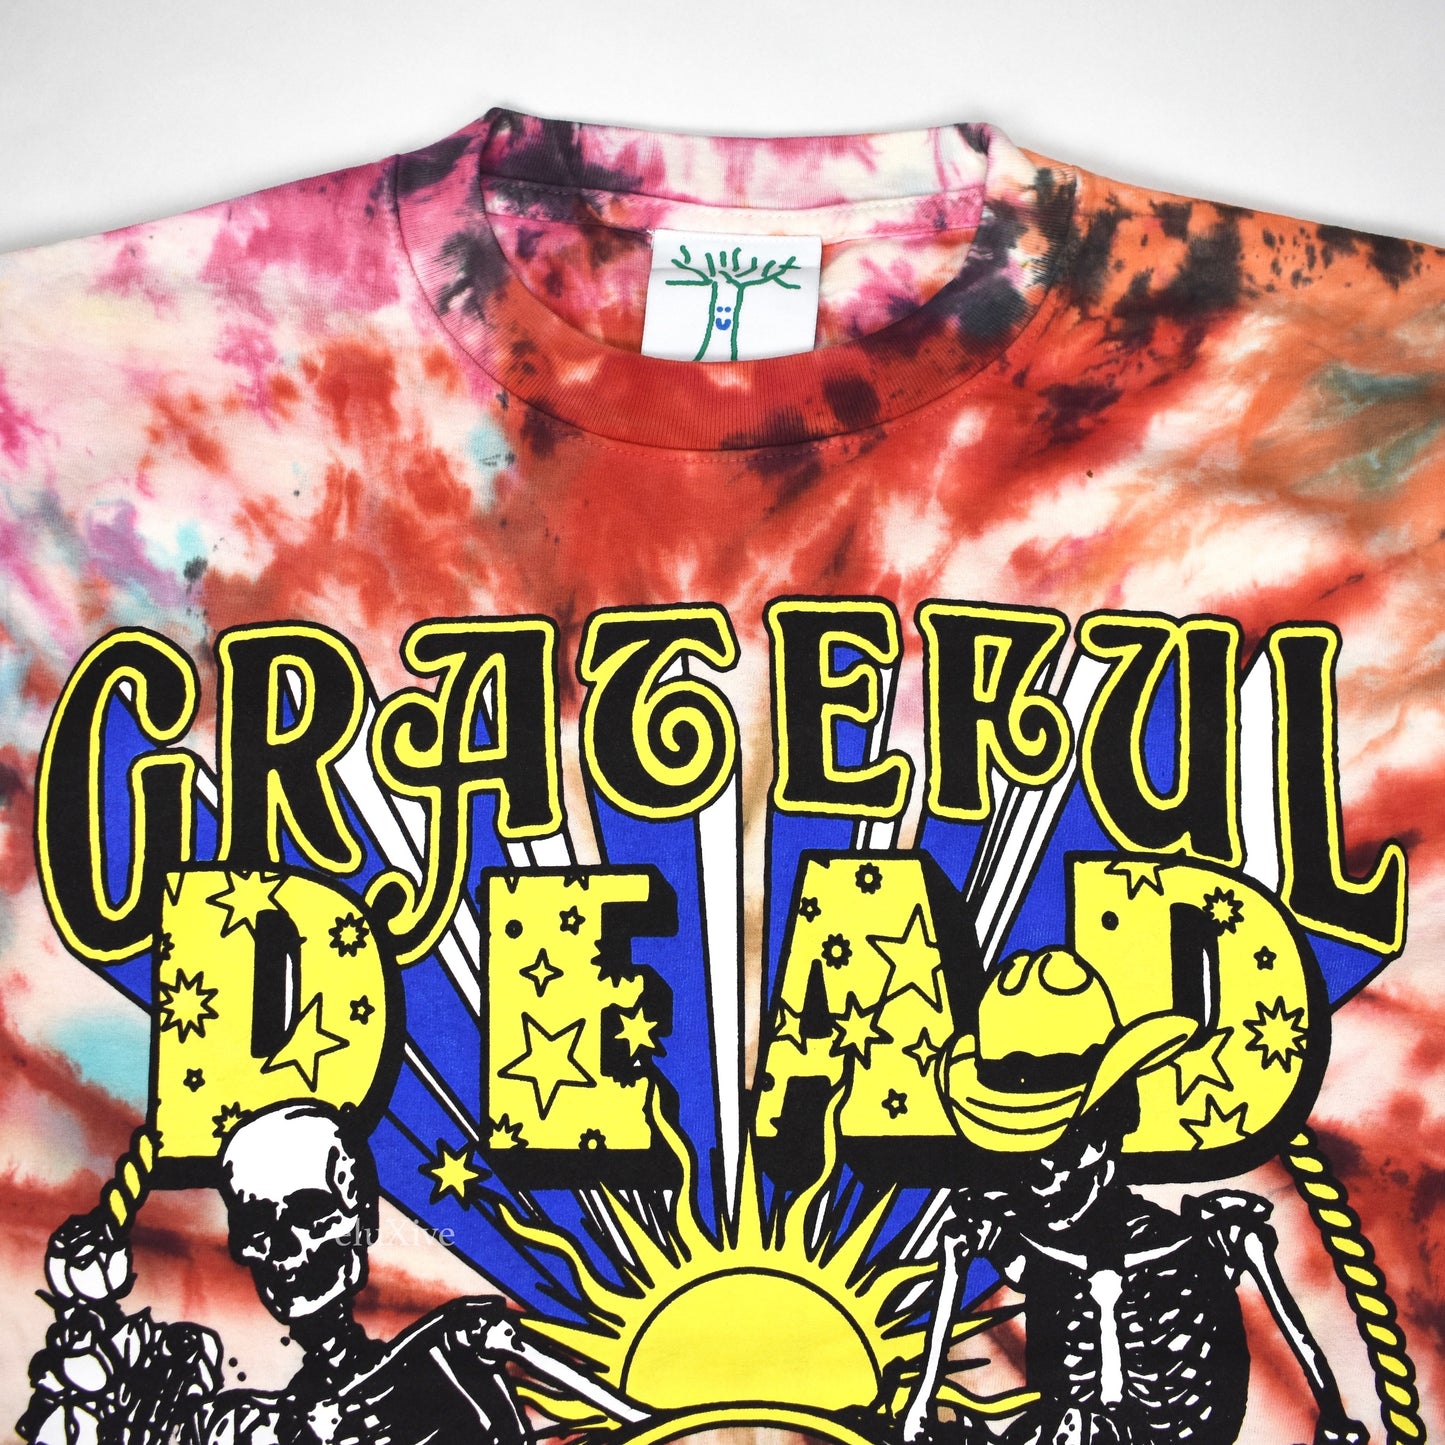 Online Ceramics - Grateful Dead Turtle River Tie-Dye T-Shirt